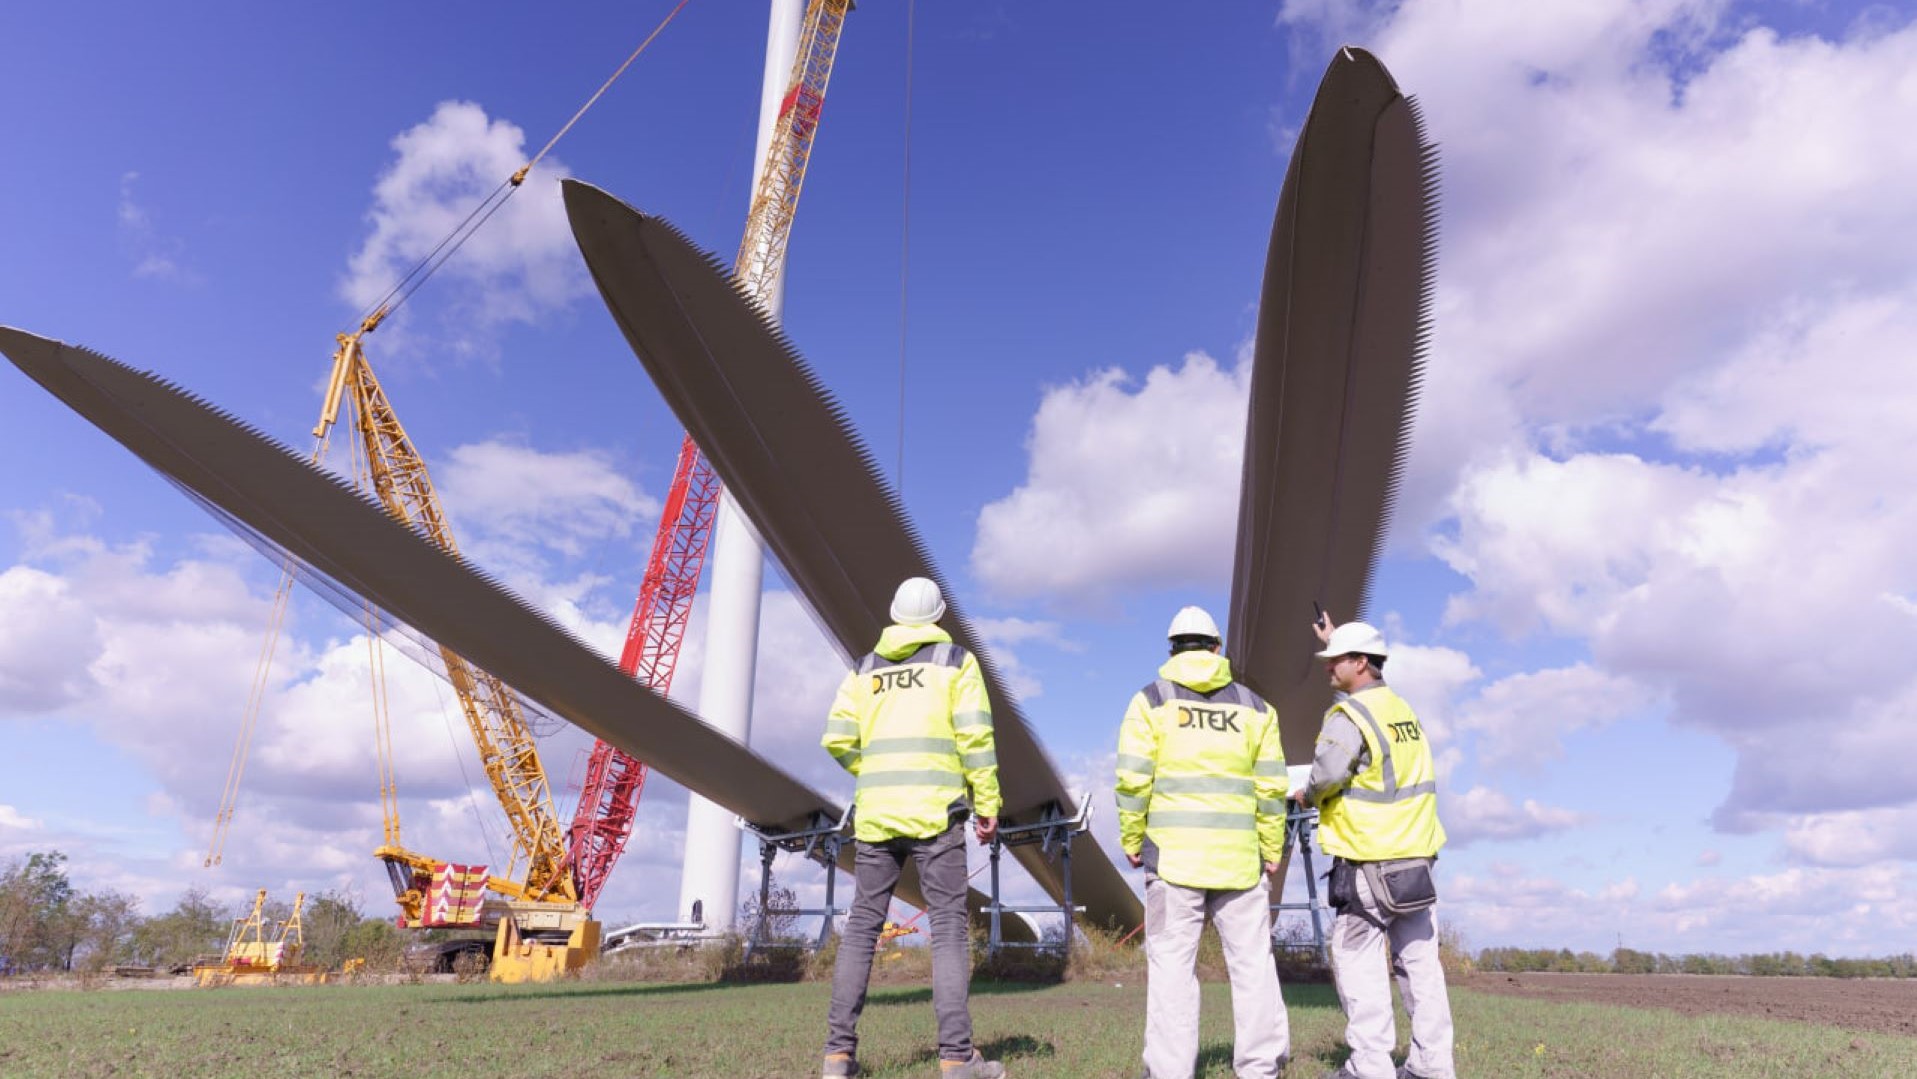 Engineers overseeing construction of wind turbines in Ukraine